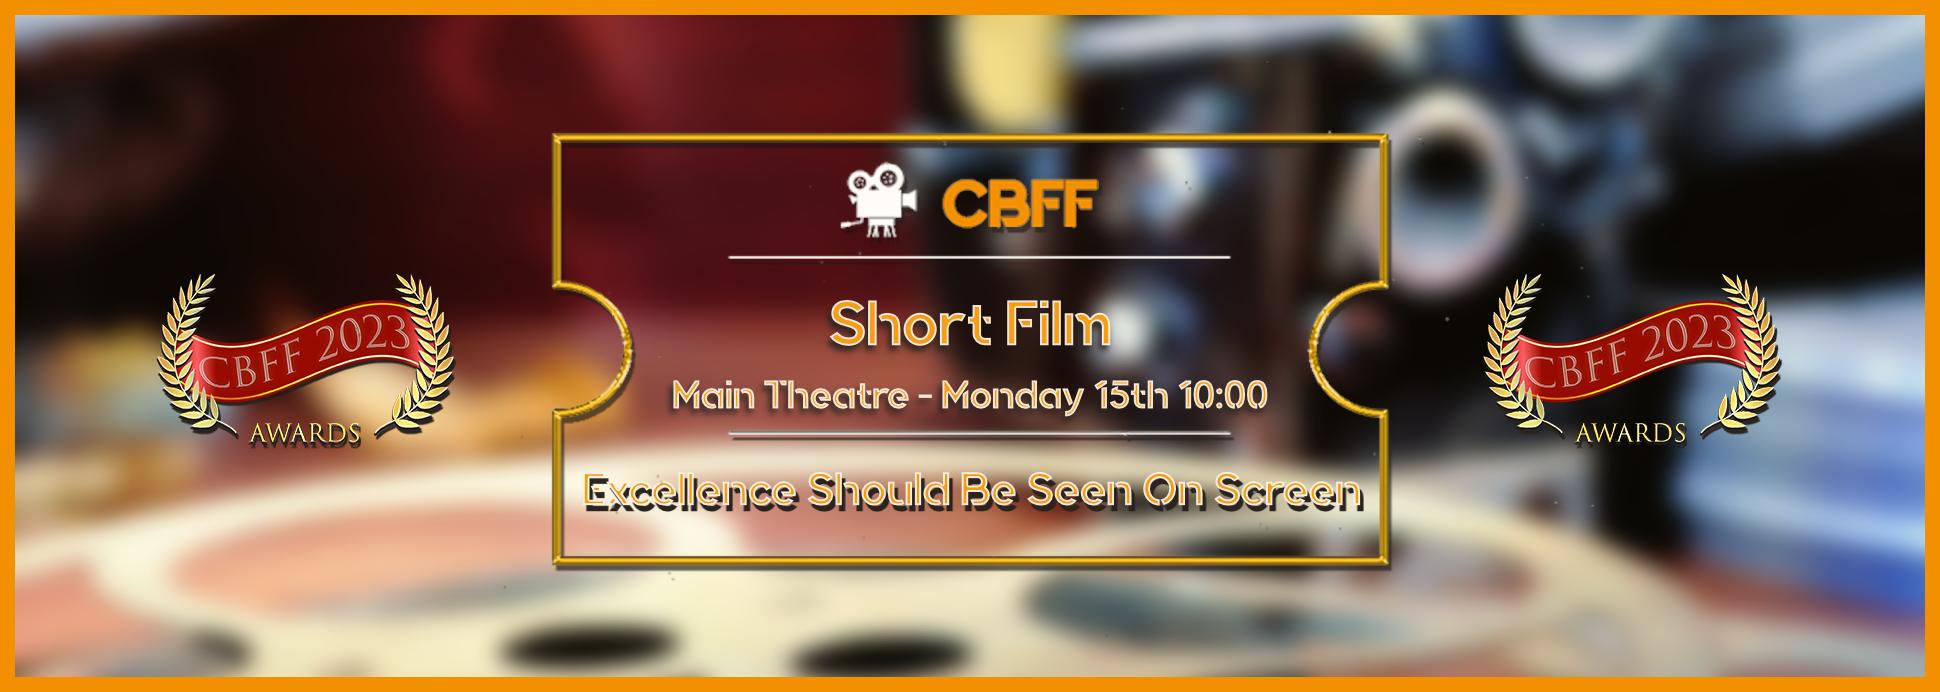 Main Theatre - Short Film 15th 10:00